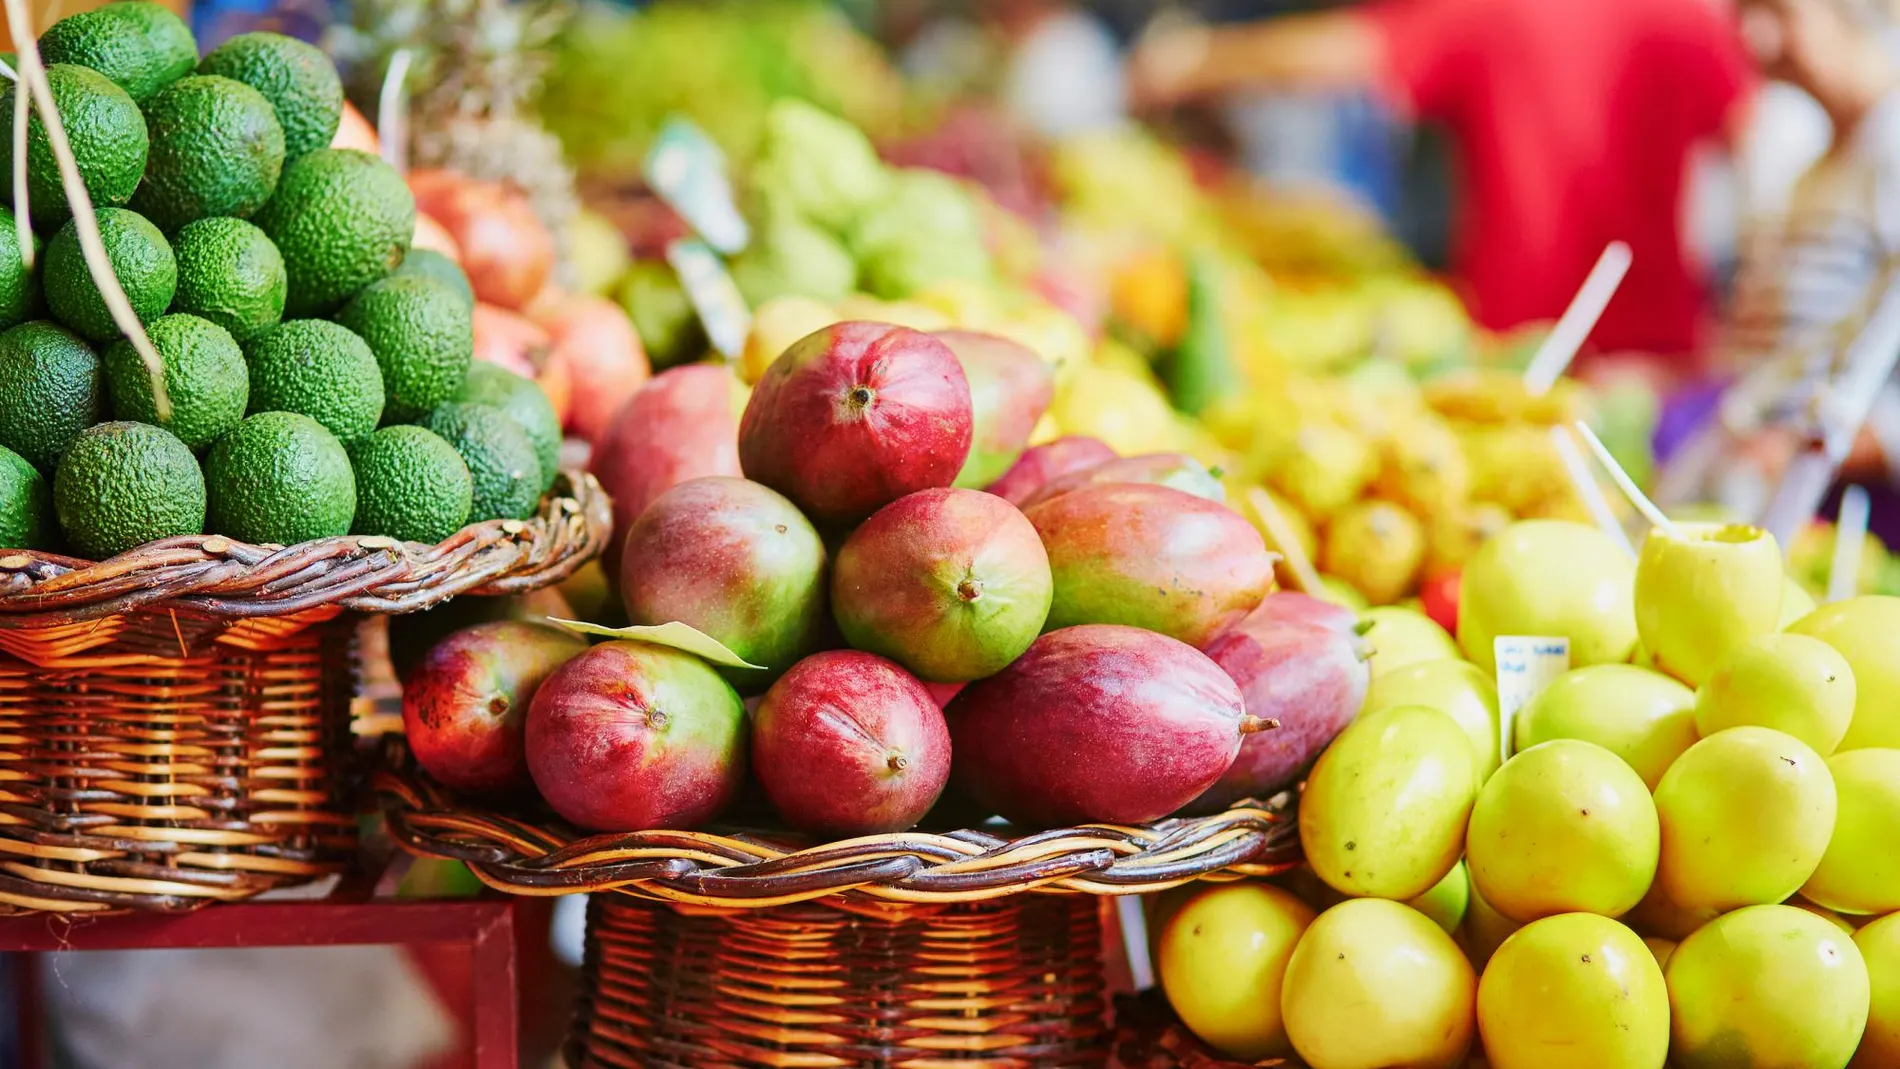 El 60% de las reacciones alérgicas inducidas por frutas se debe a una proteína transportadora de lípidos llamada LTP